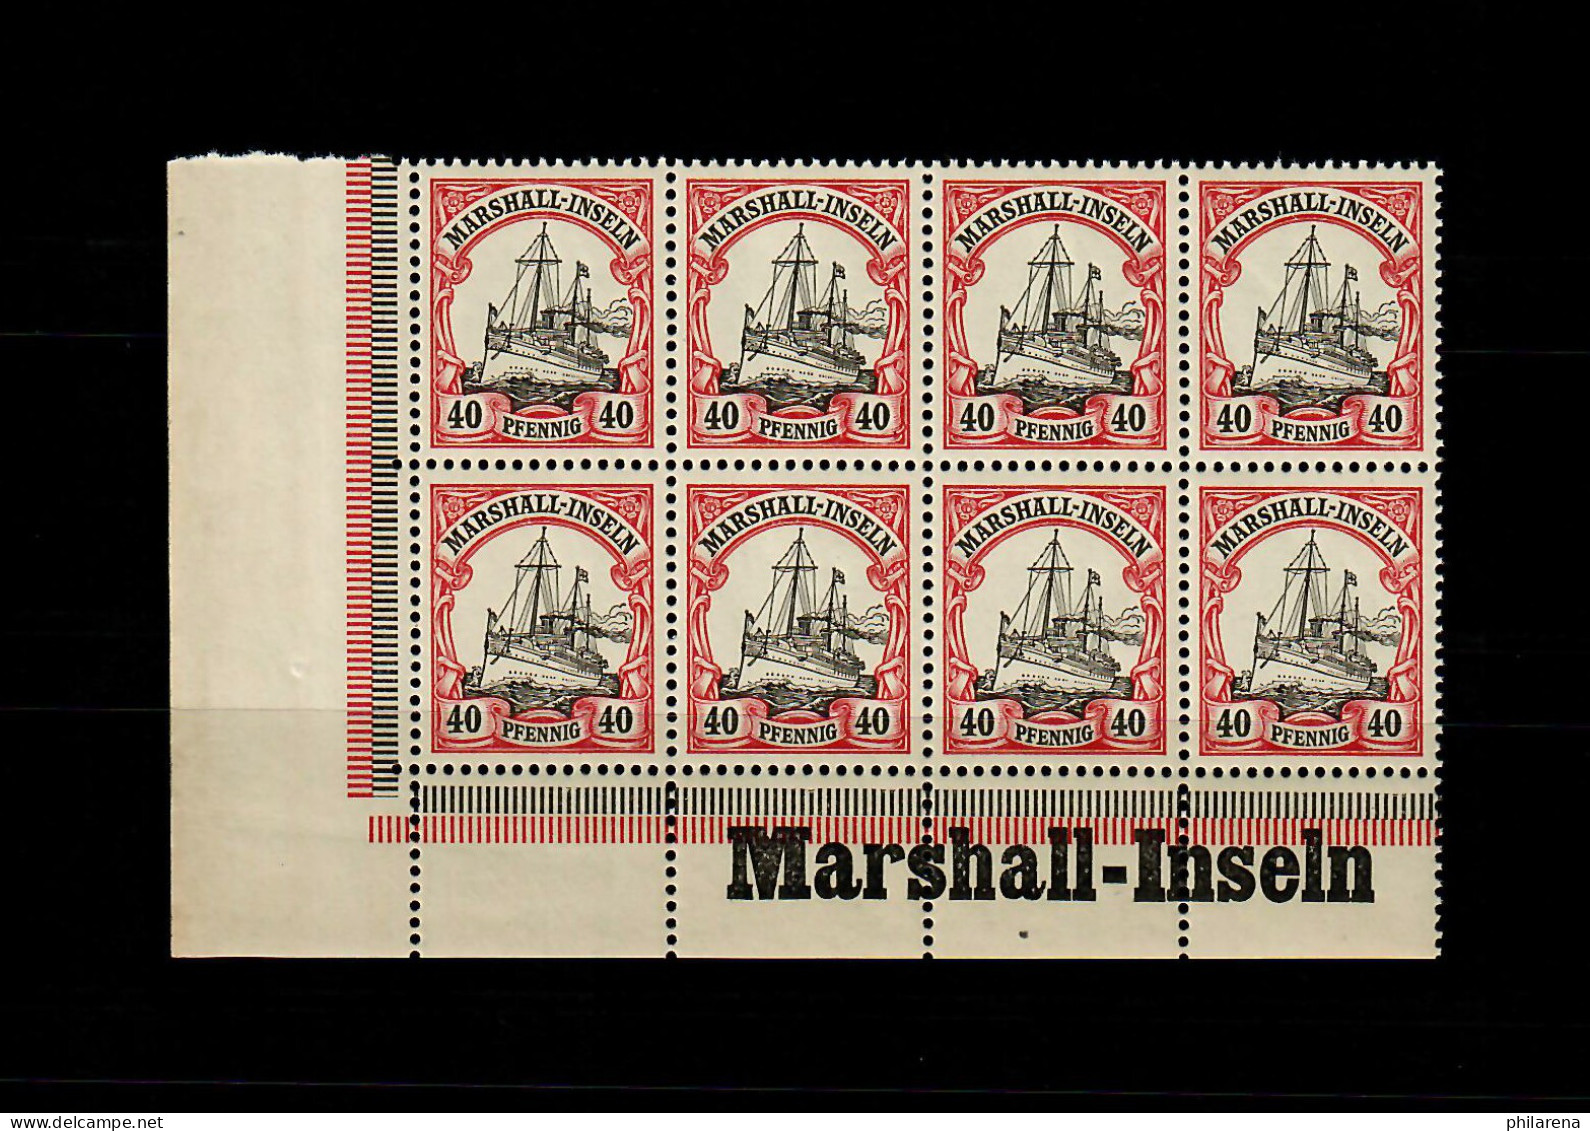 Marschall-Inseln: MiNr. 19, 8er Block Links Inschrift Eckrand, Postfrisch ** - Isole Marshall